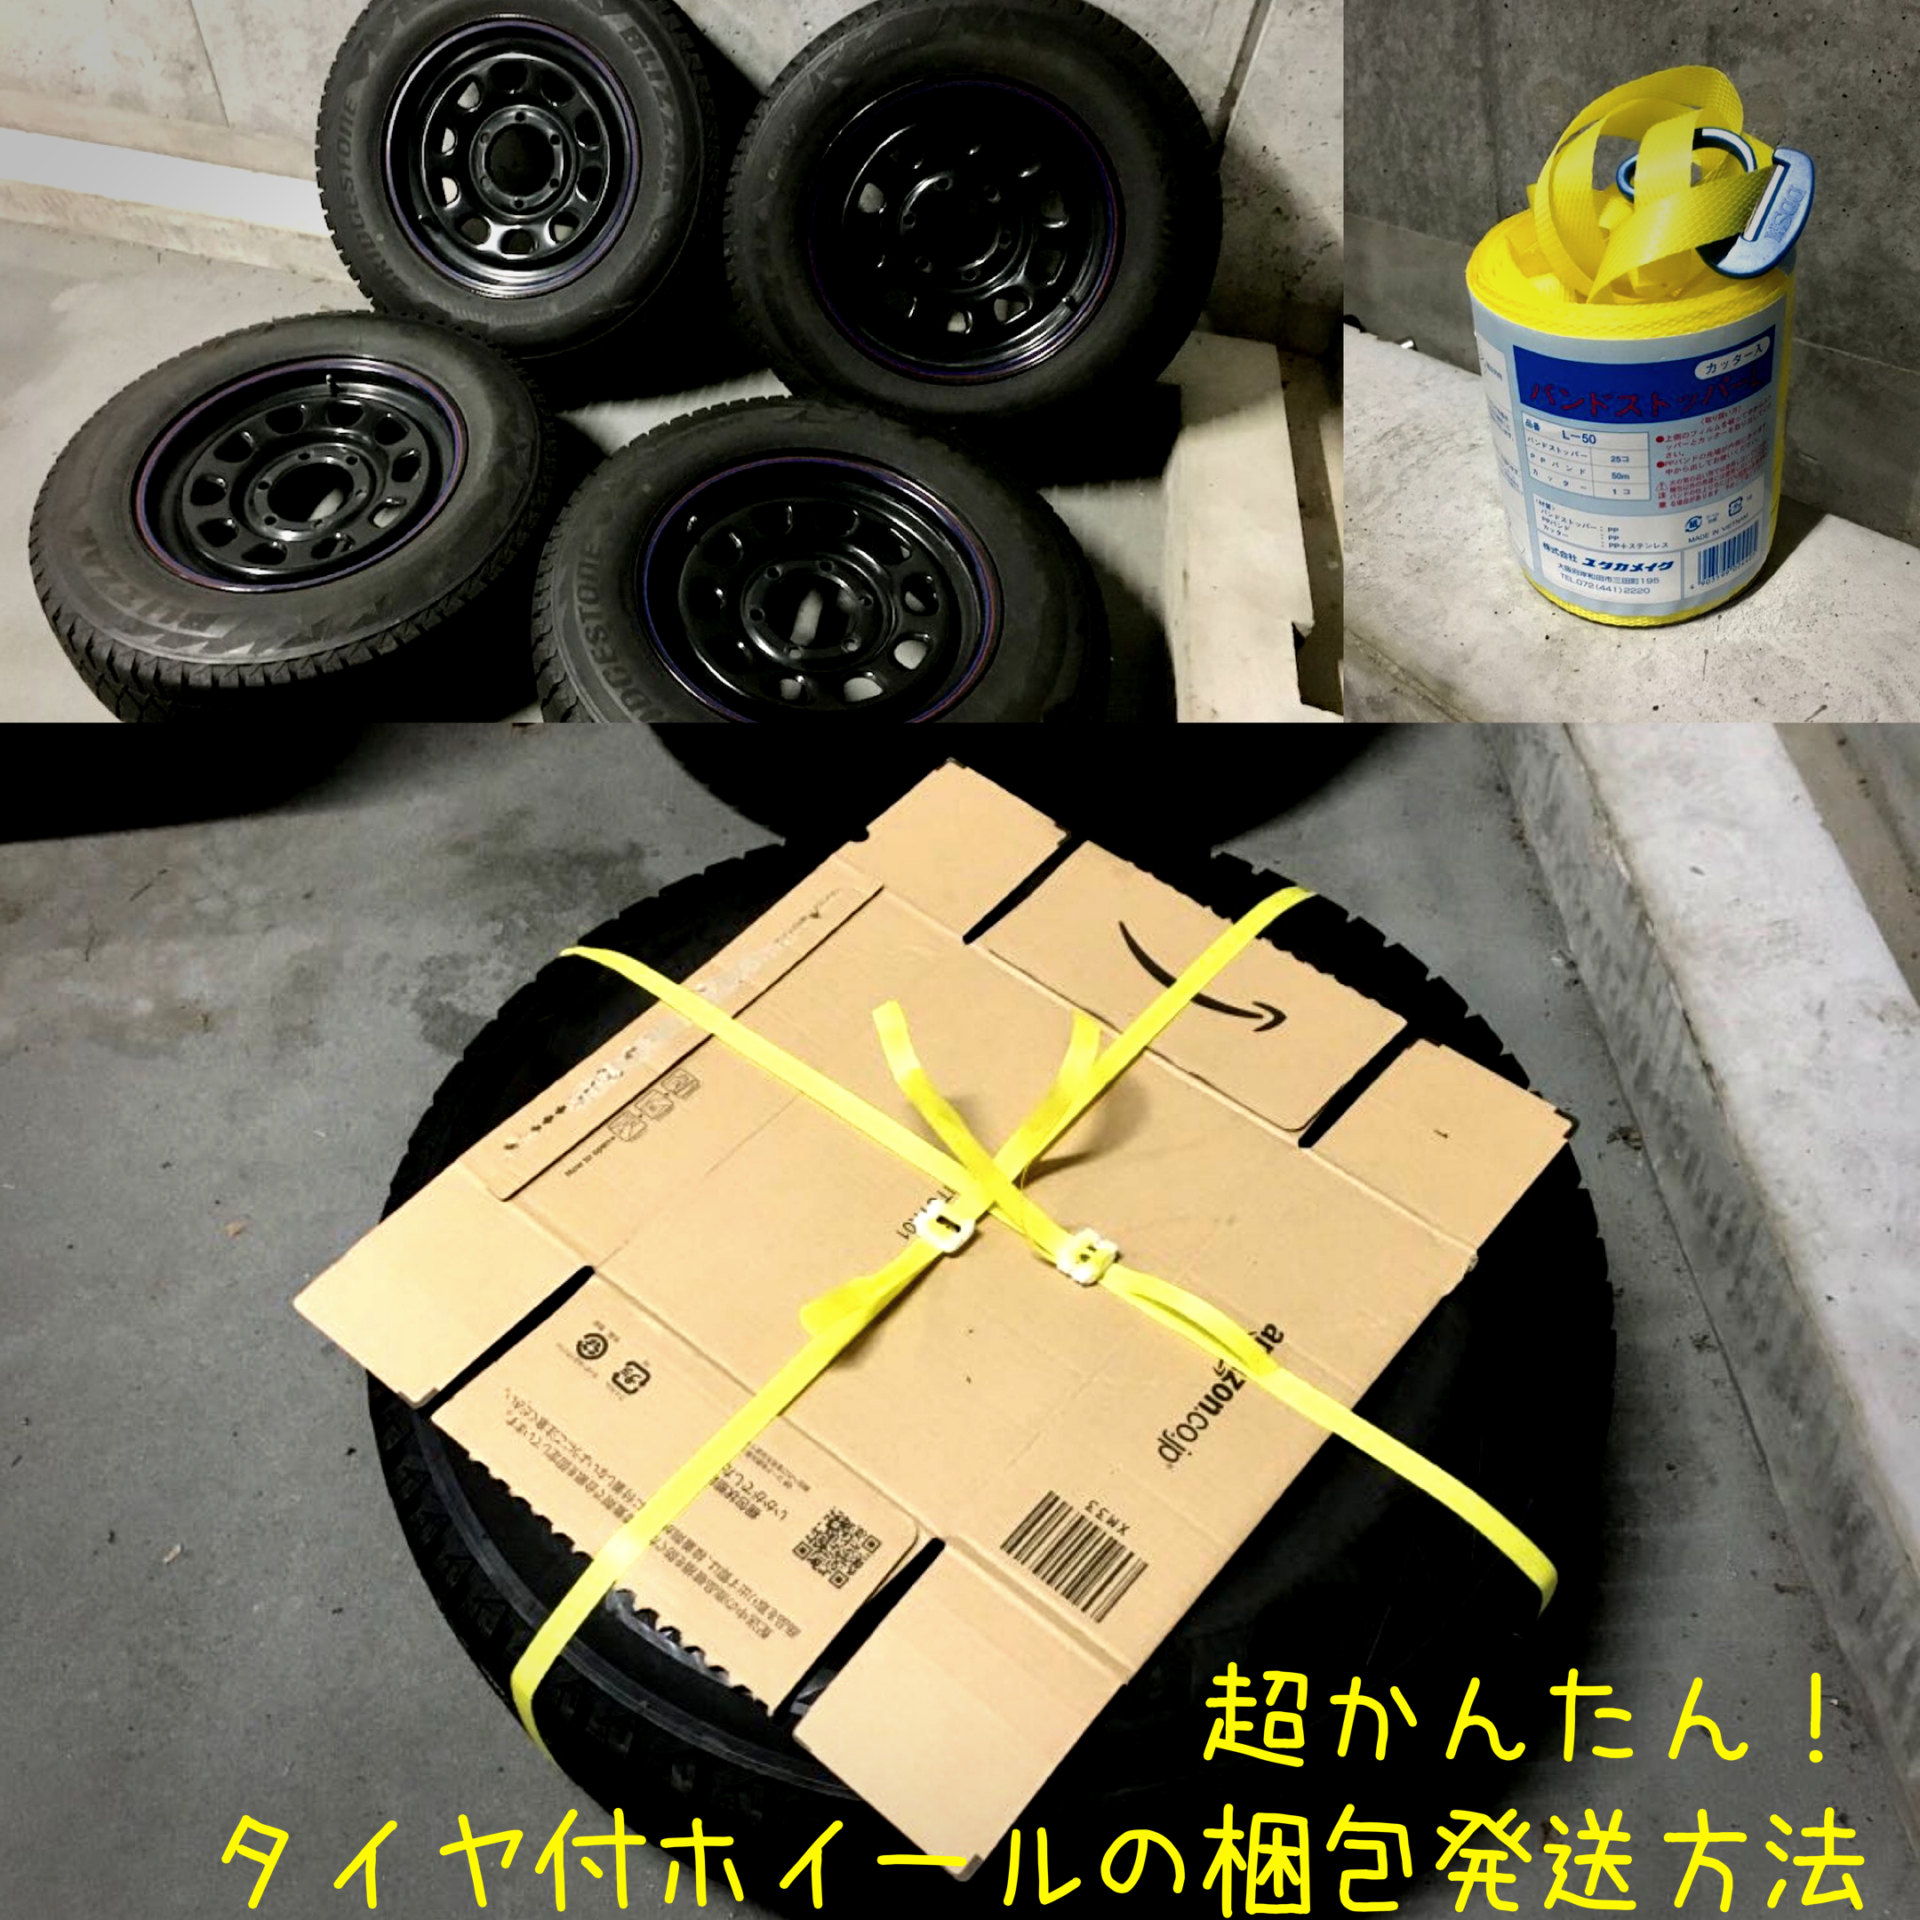 簡単梱包】ホイール付きタイヤを梱包、発送する方法まとめ【送料の調べ